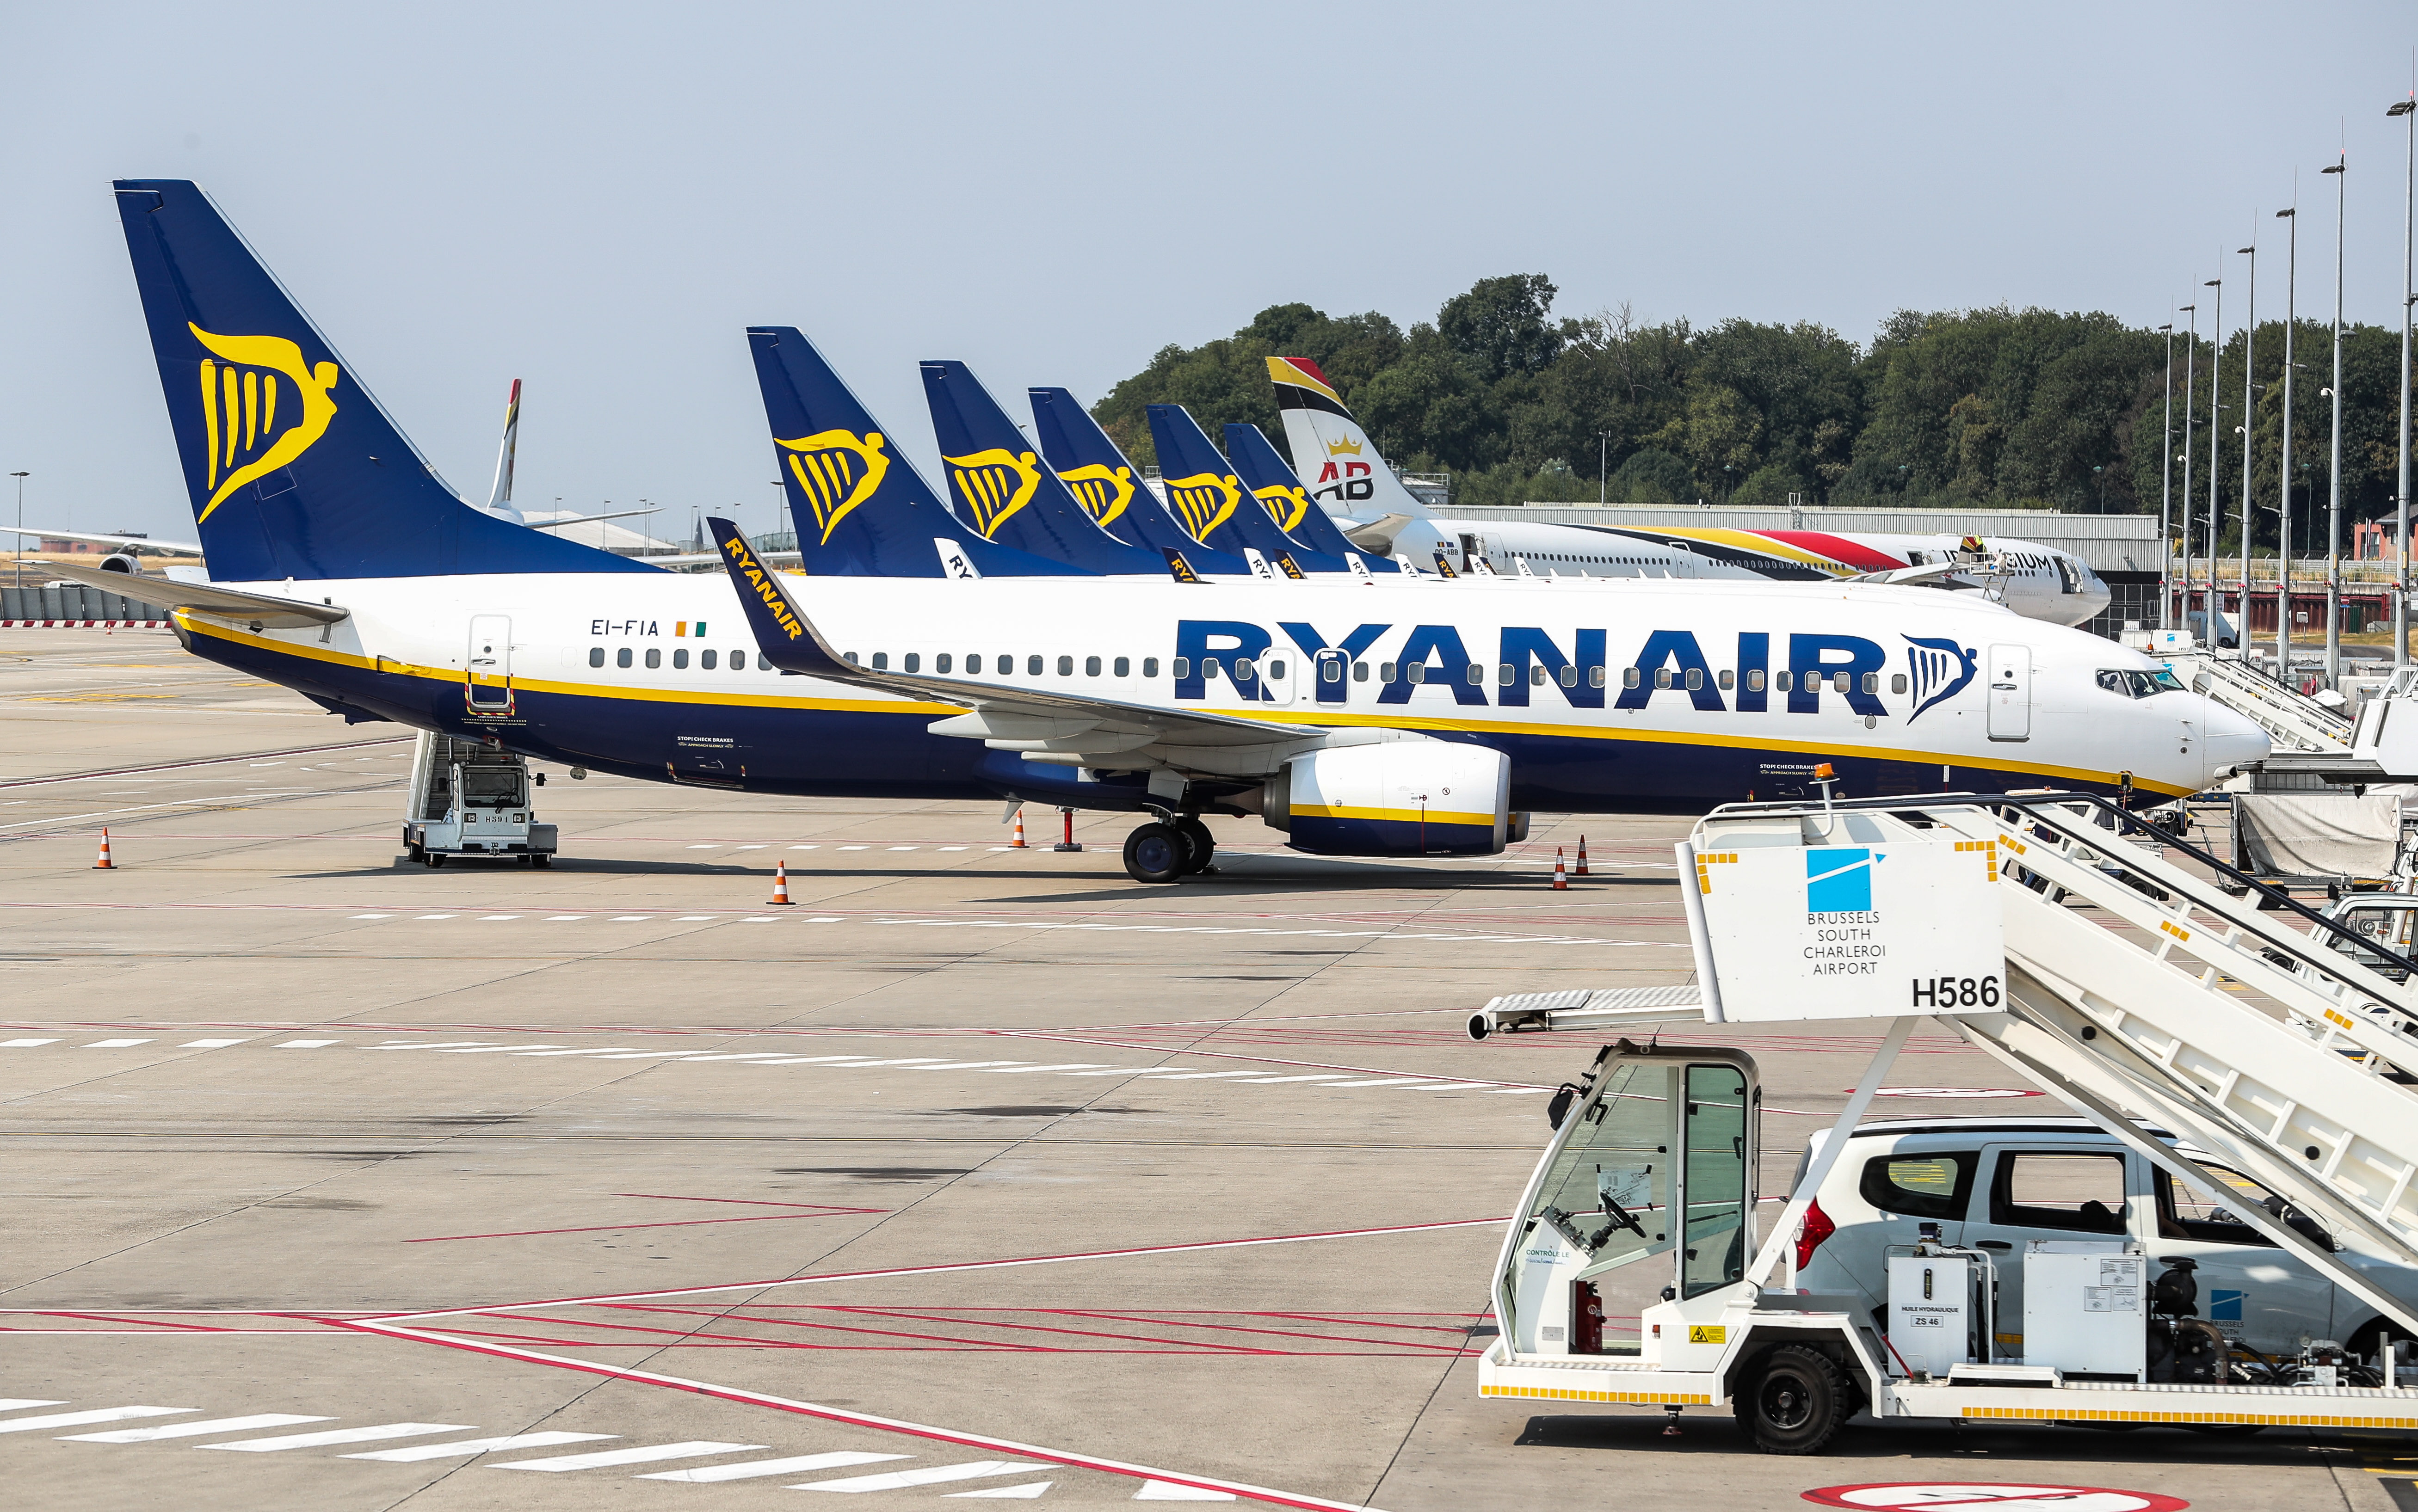 Ryanair - strajk 10 sierpnia 2018 r. w Niemczech, Belgii, Holandii,  Irlandii, Szwecji - Biznes - Forbes.pl